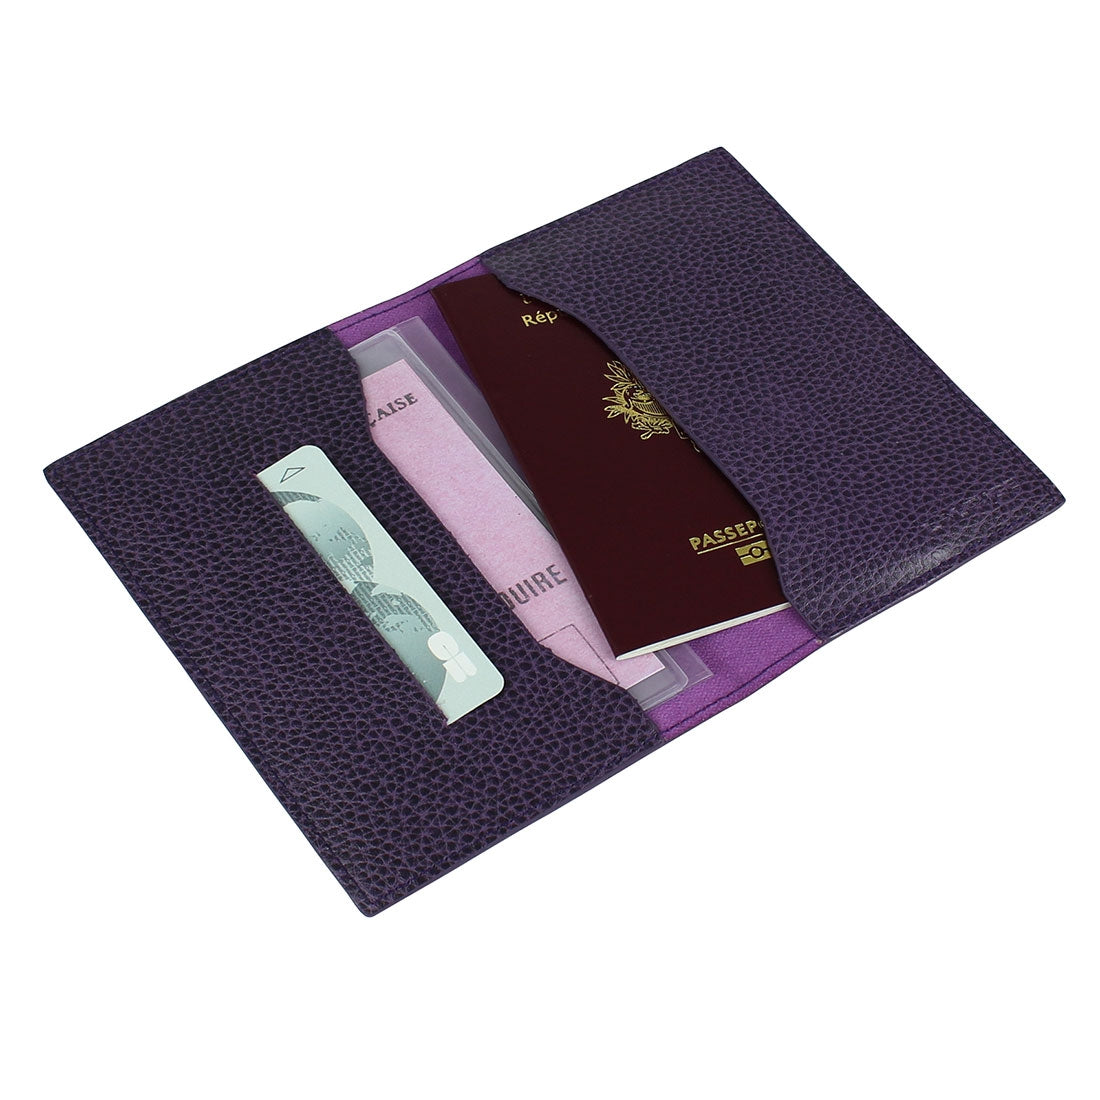 Passport/Document Holder - Violine#color_laurige-violet